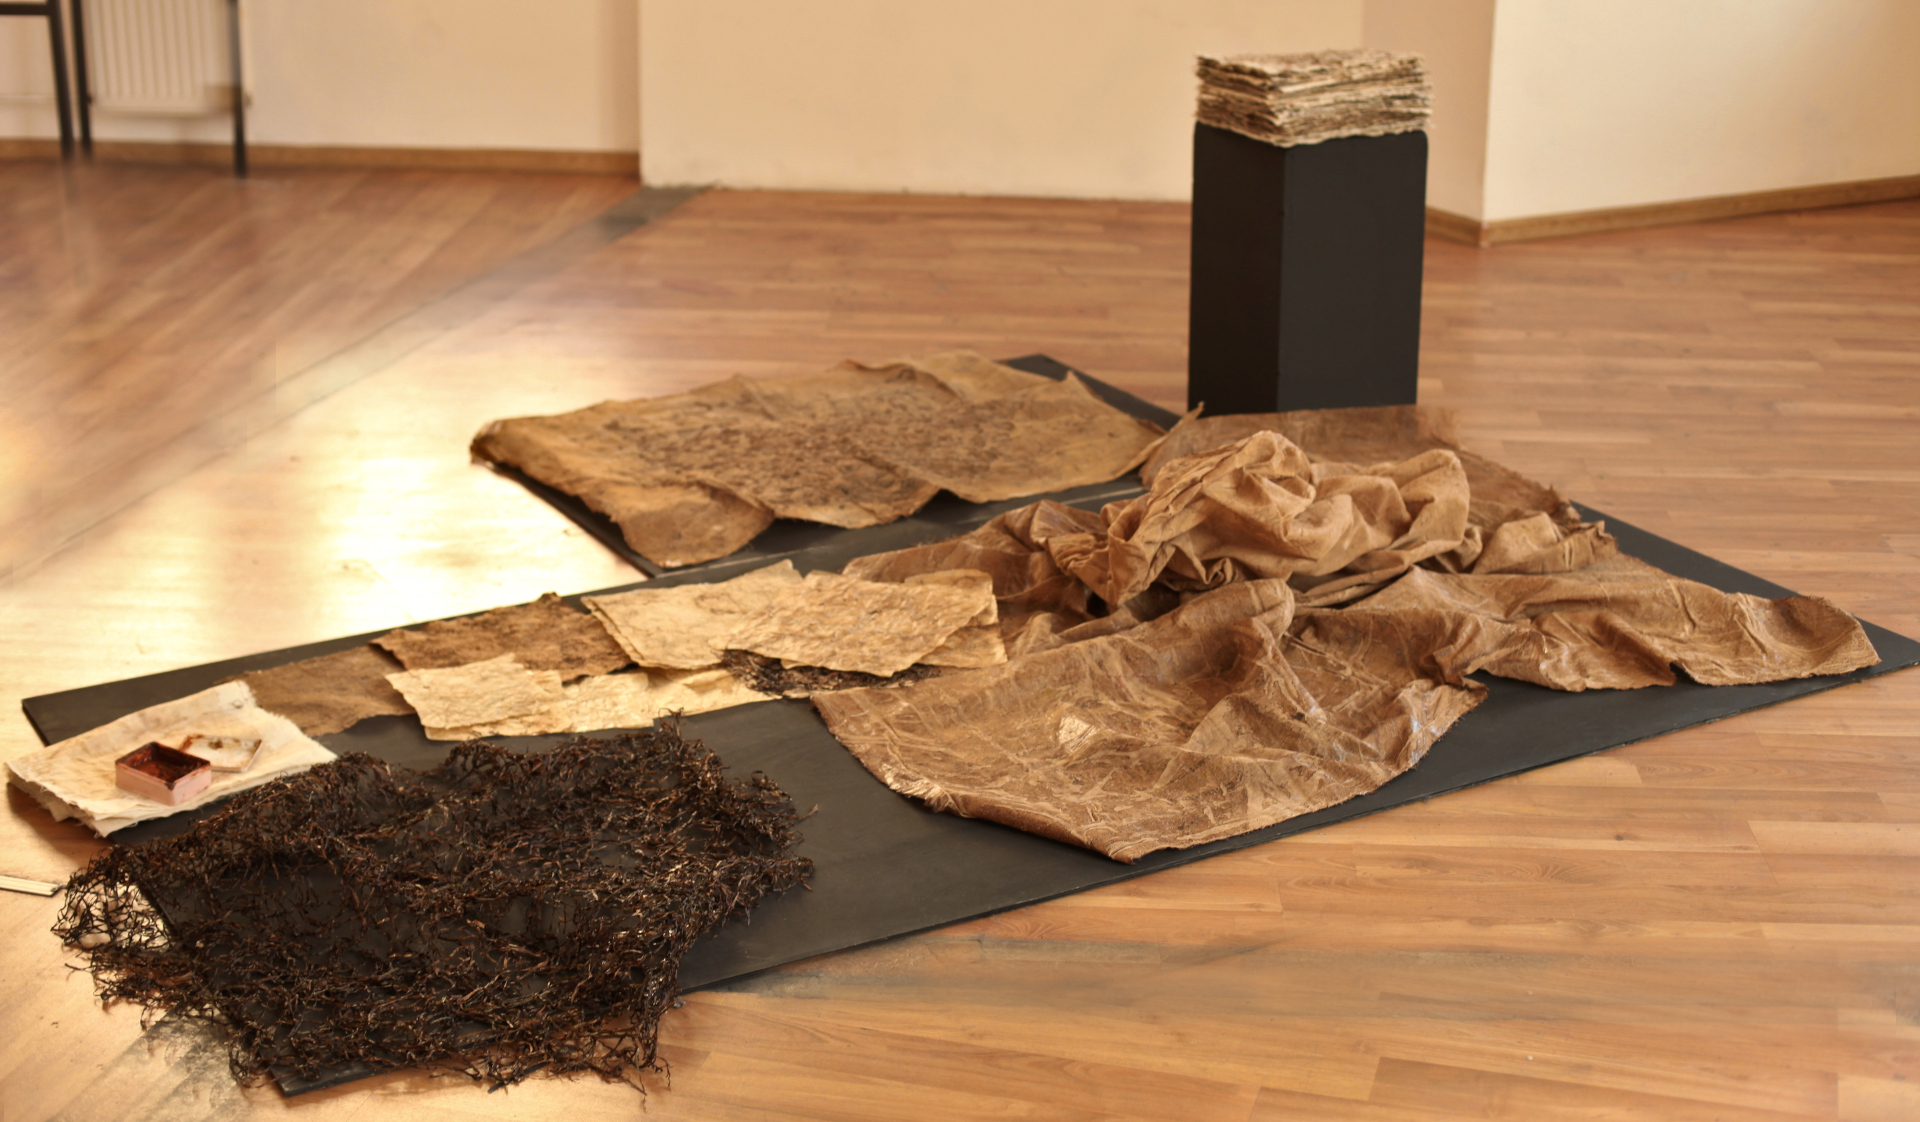 Dokumentacja instalacji przestrzennej, leżącej na pod czarnym blacie i podłodze, która składa się z brązowych tkaninn, struktury przestrzennej z alg. Na dalszym planie znajduje się niewysoki postument ze zbiorem papierów czerpanych.